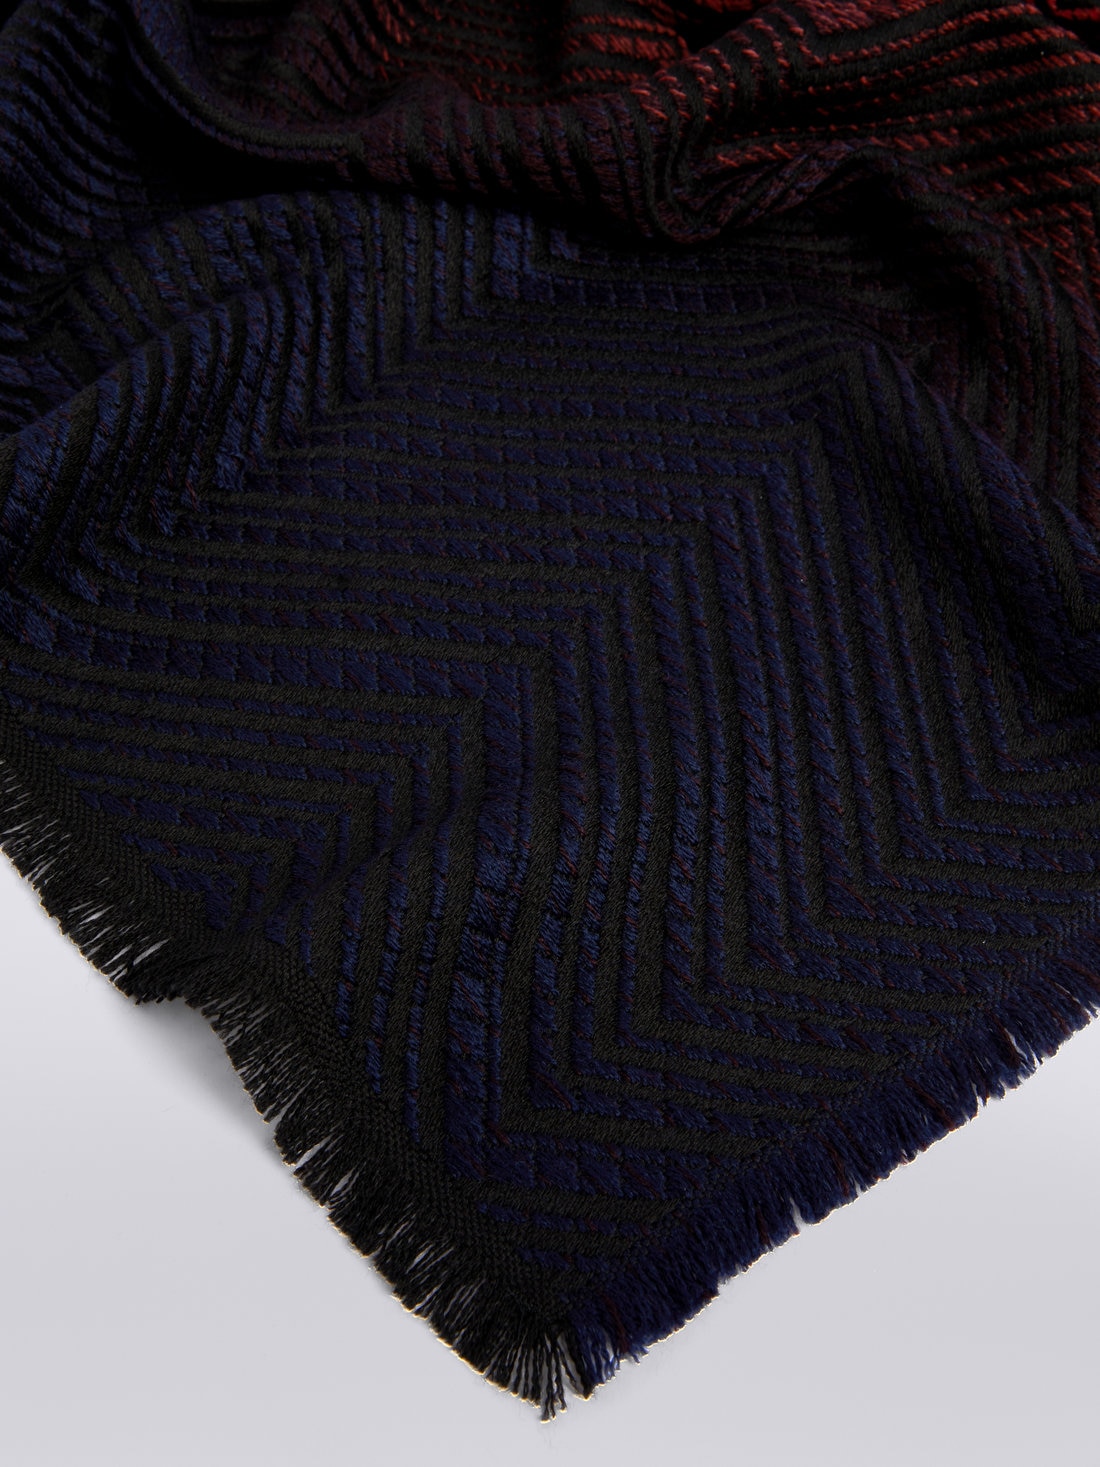 Scialle in lana chevron con bordi sfrangiati, Multicolore  - 8053147023274 - 1